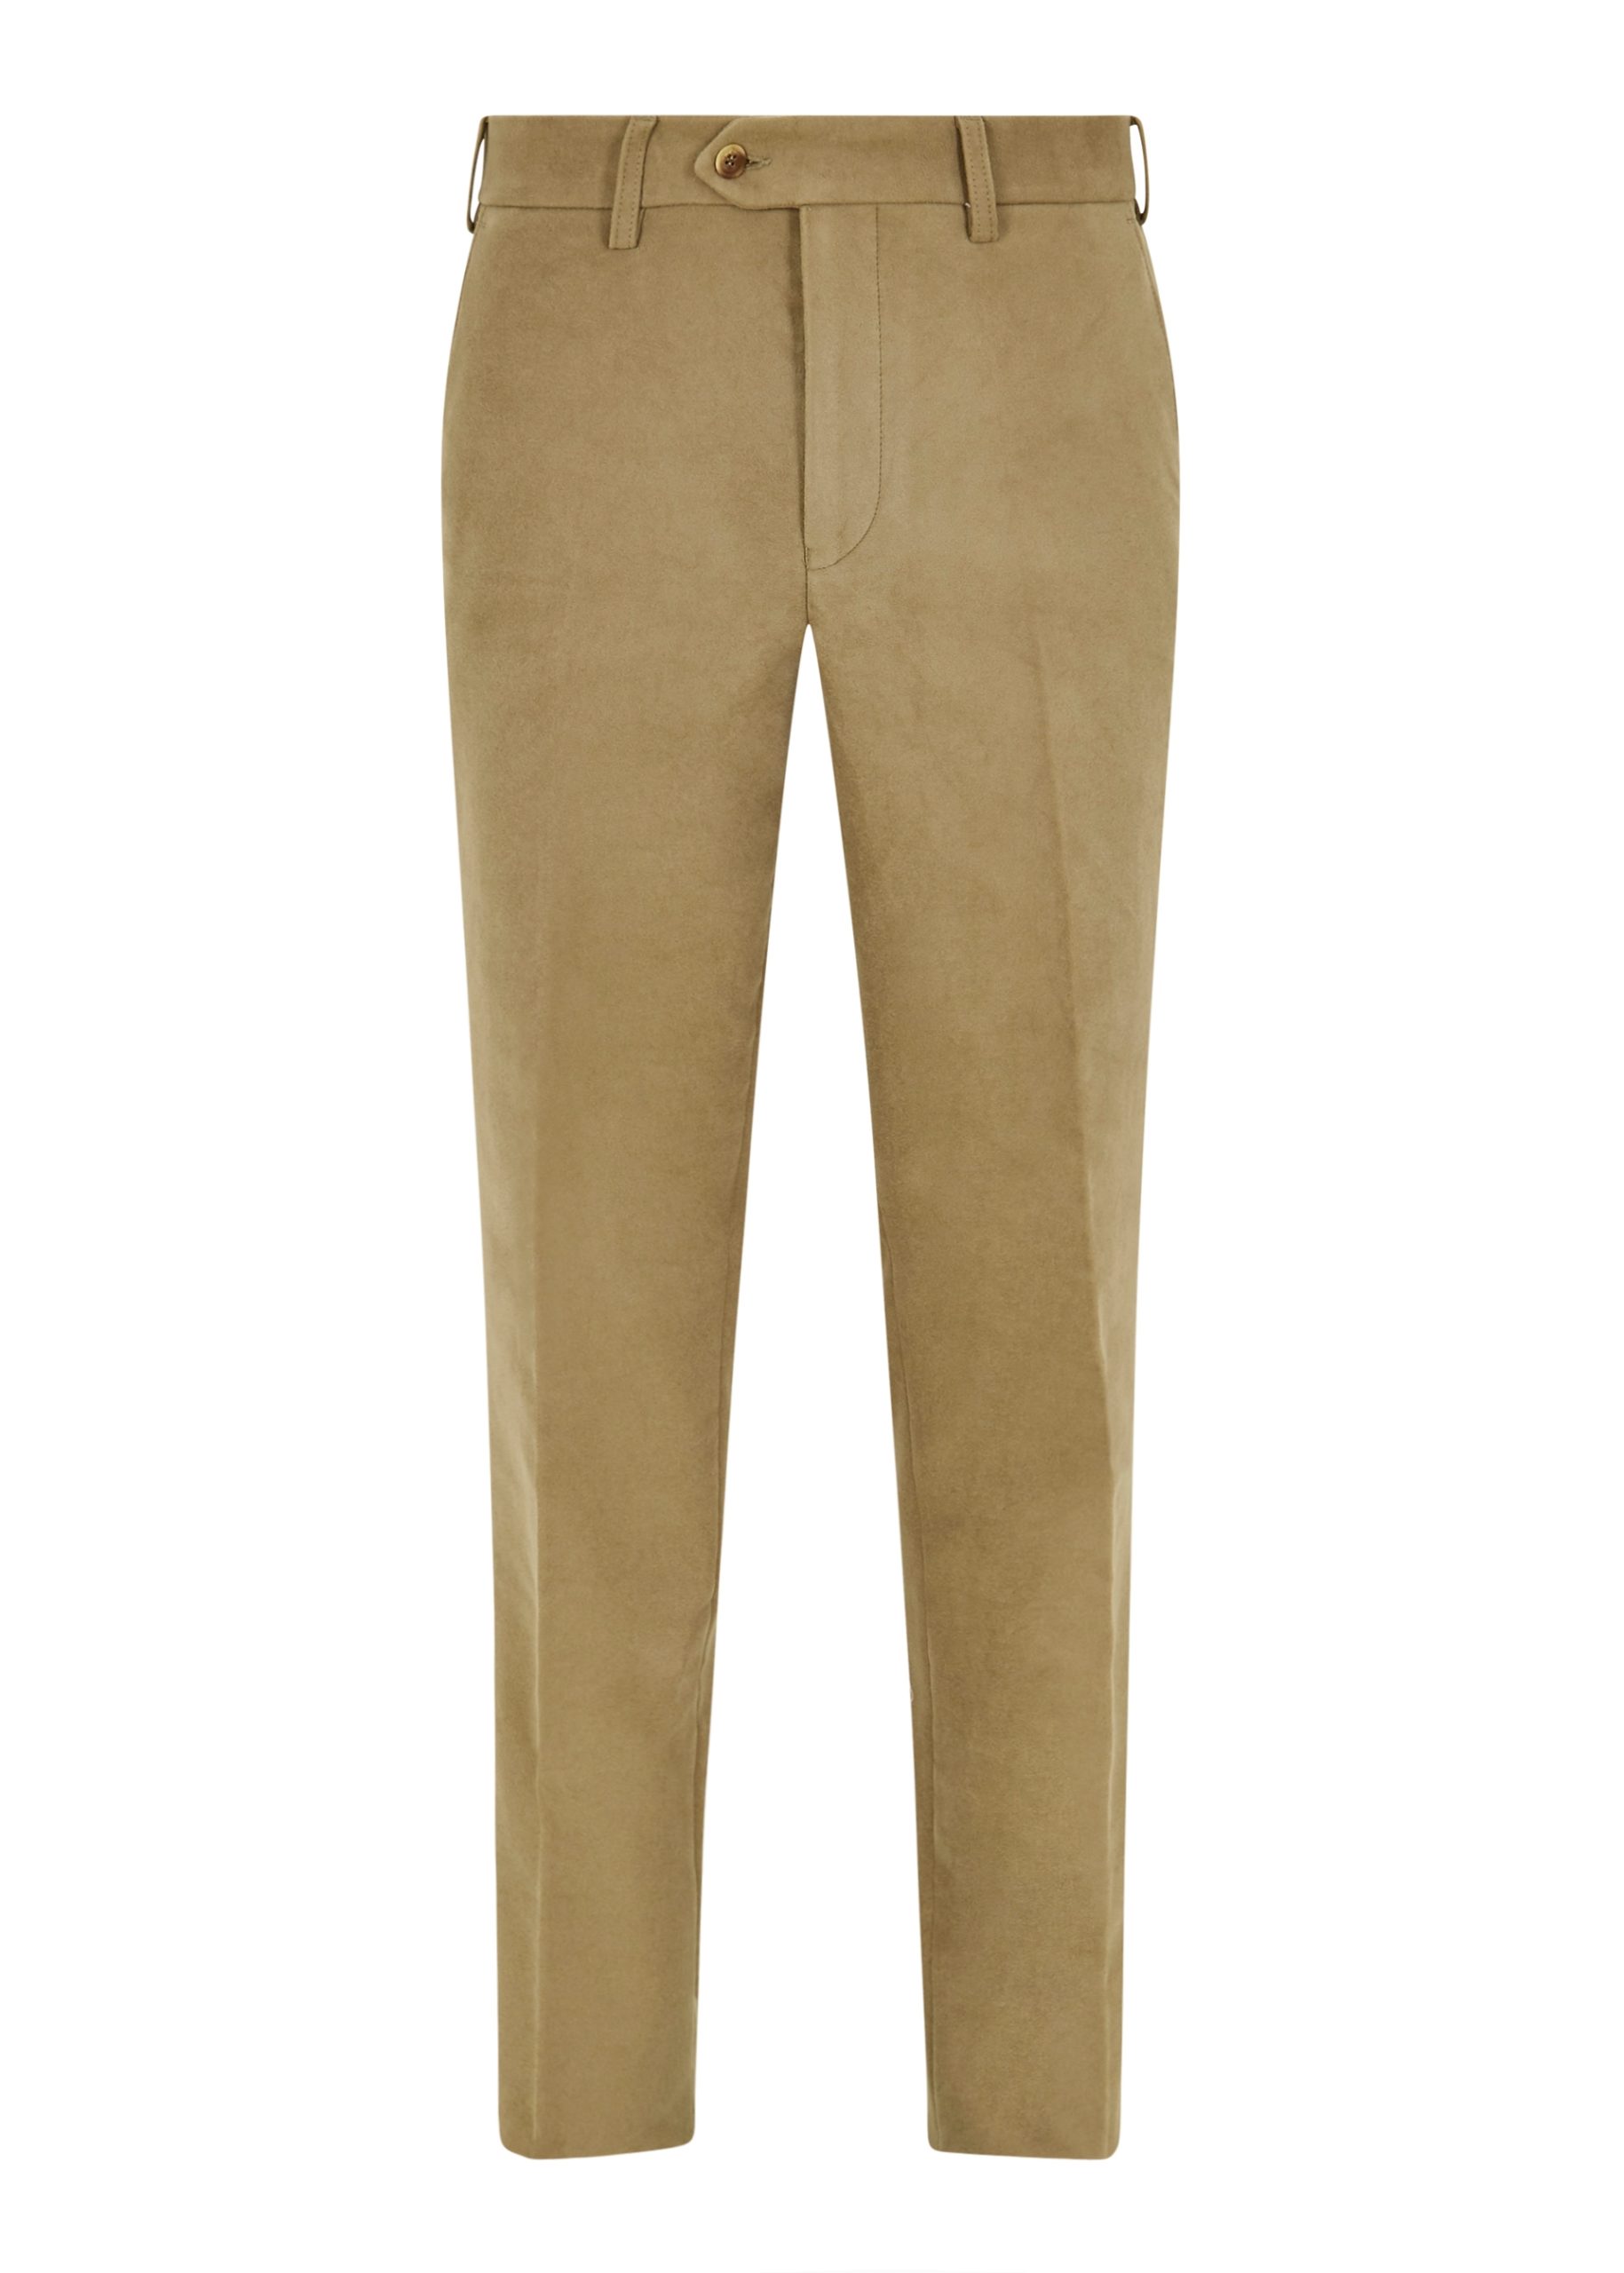 Classic flat front moleskin trousers in Lovat